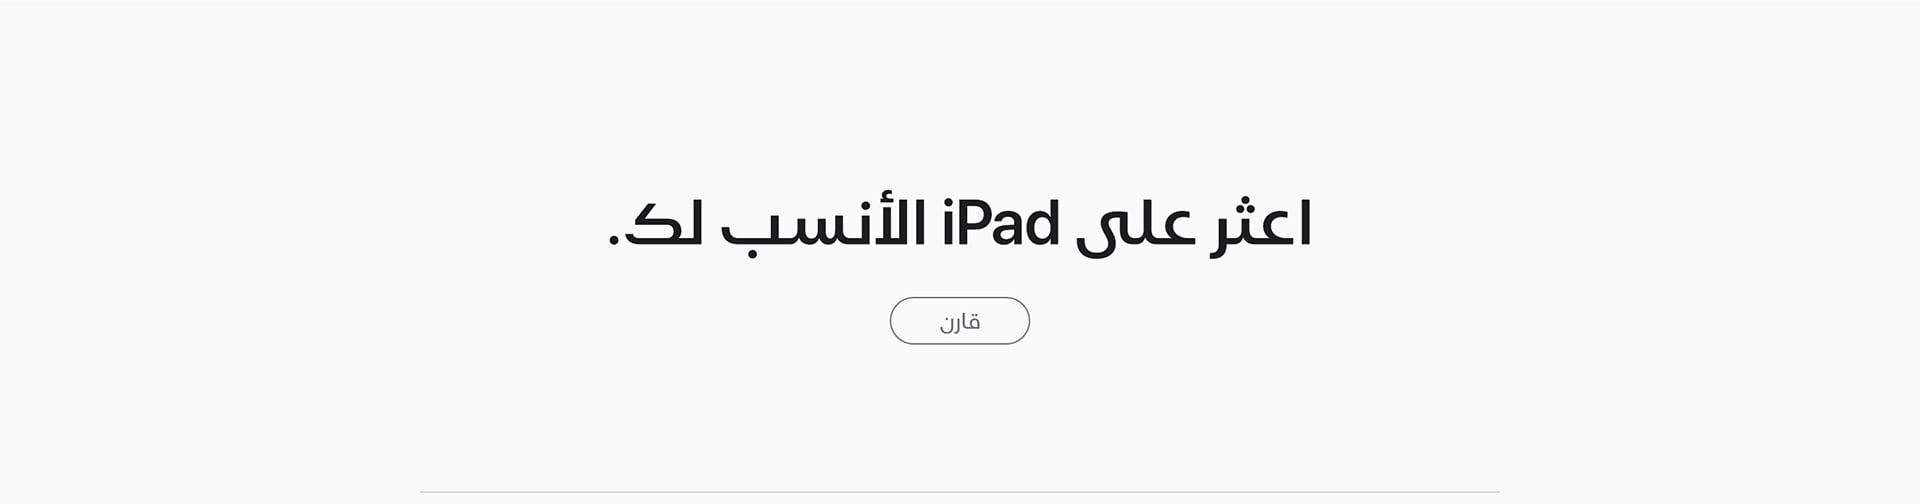 apple-ipad-10-2019-price-etisalat-uae-overview-ar-4